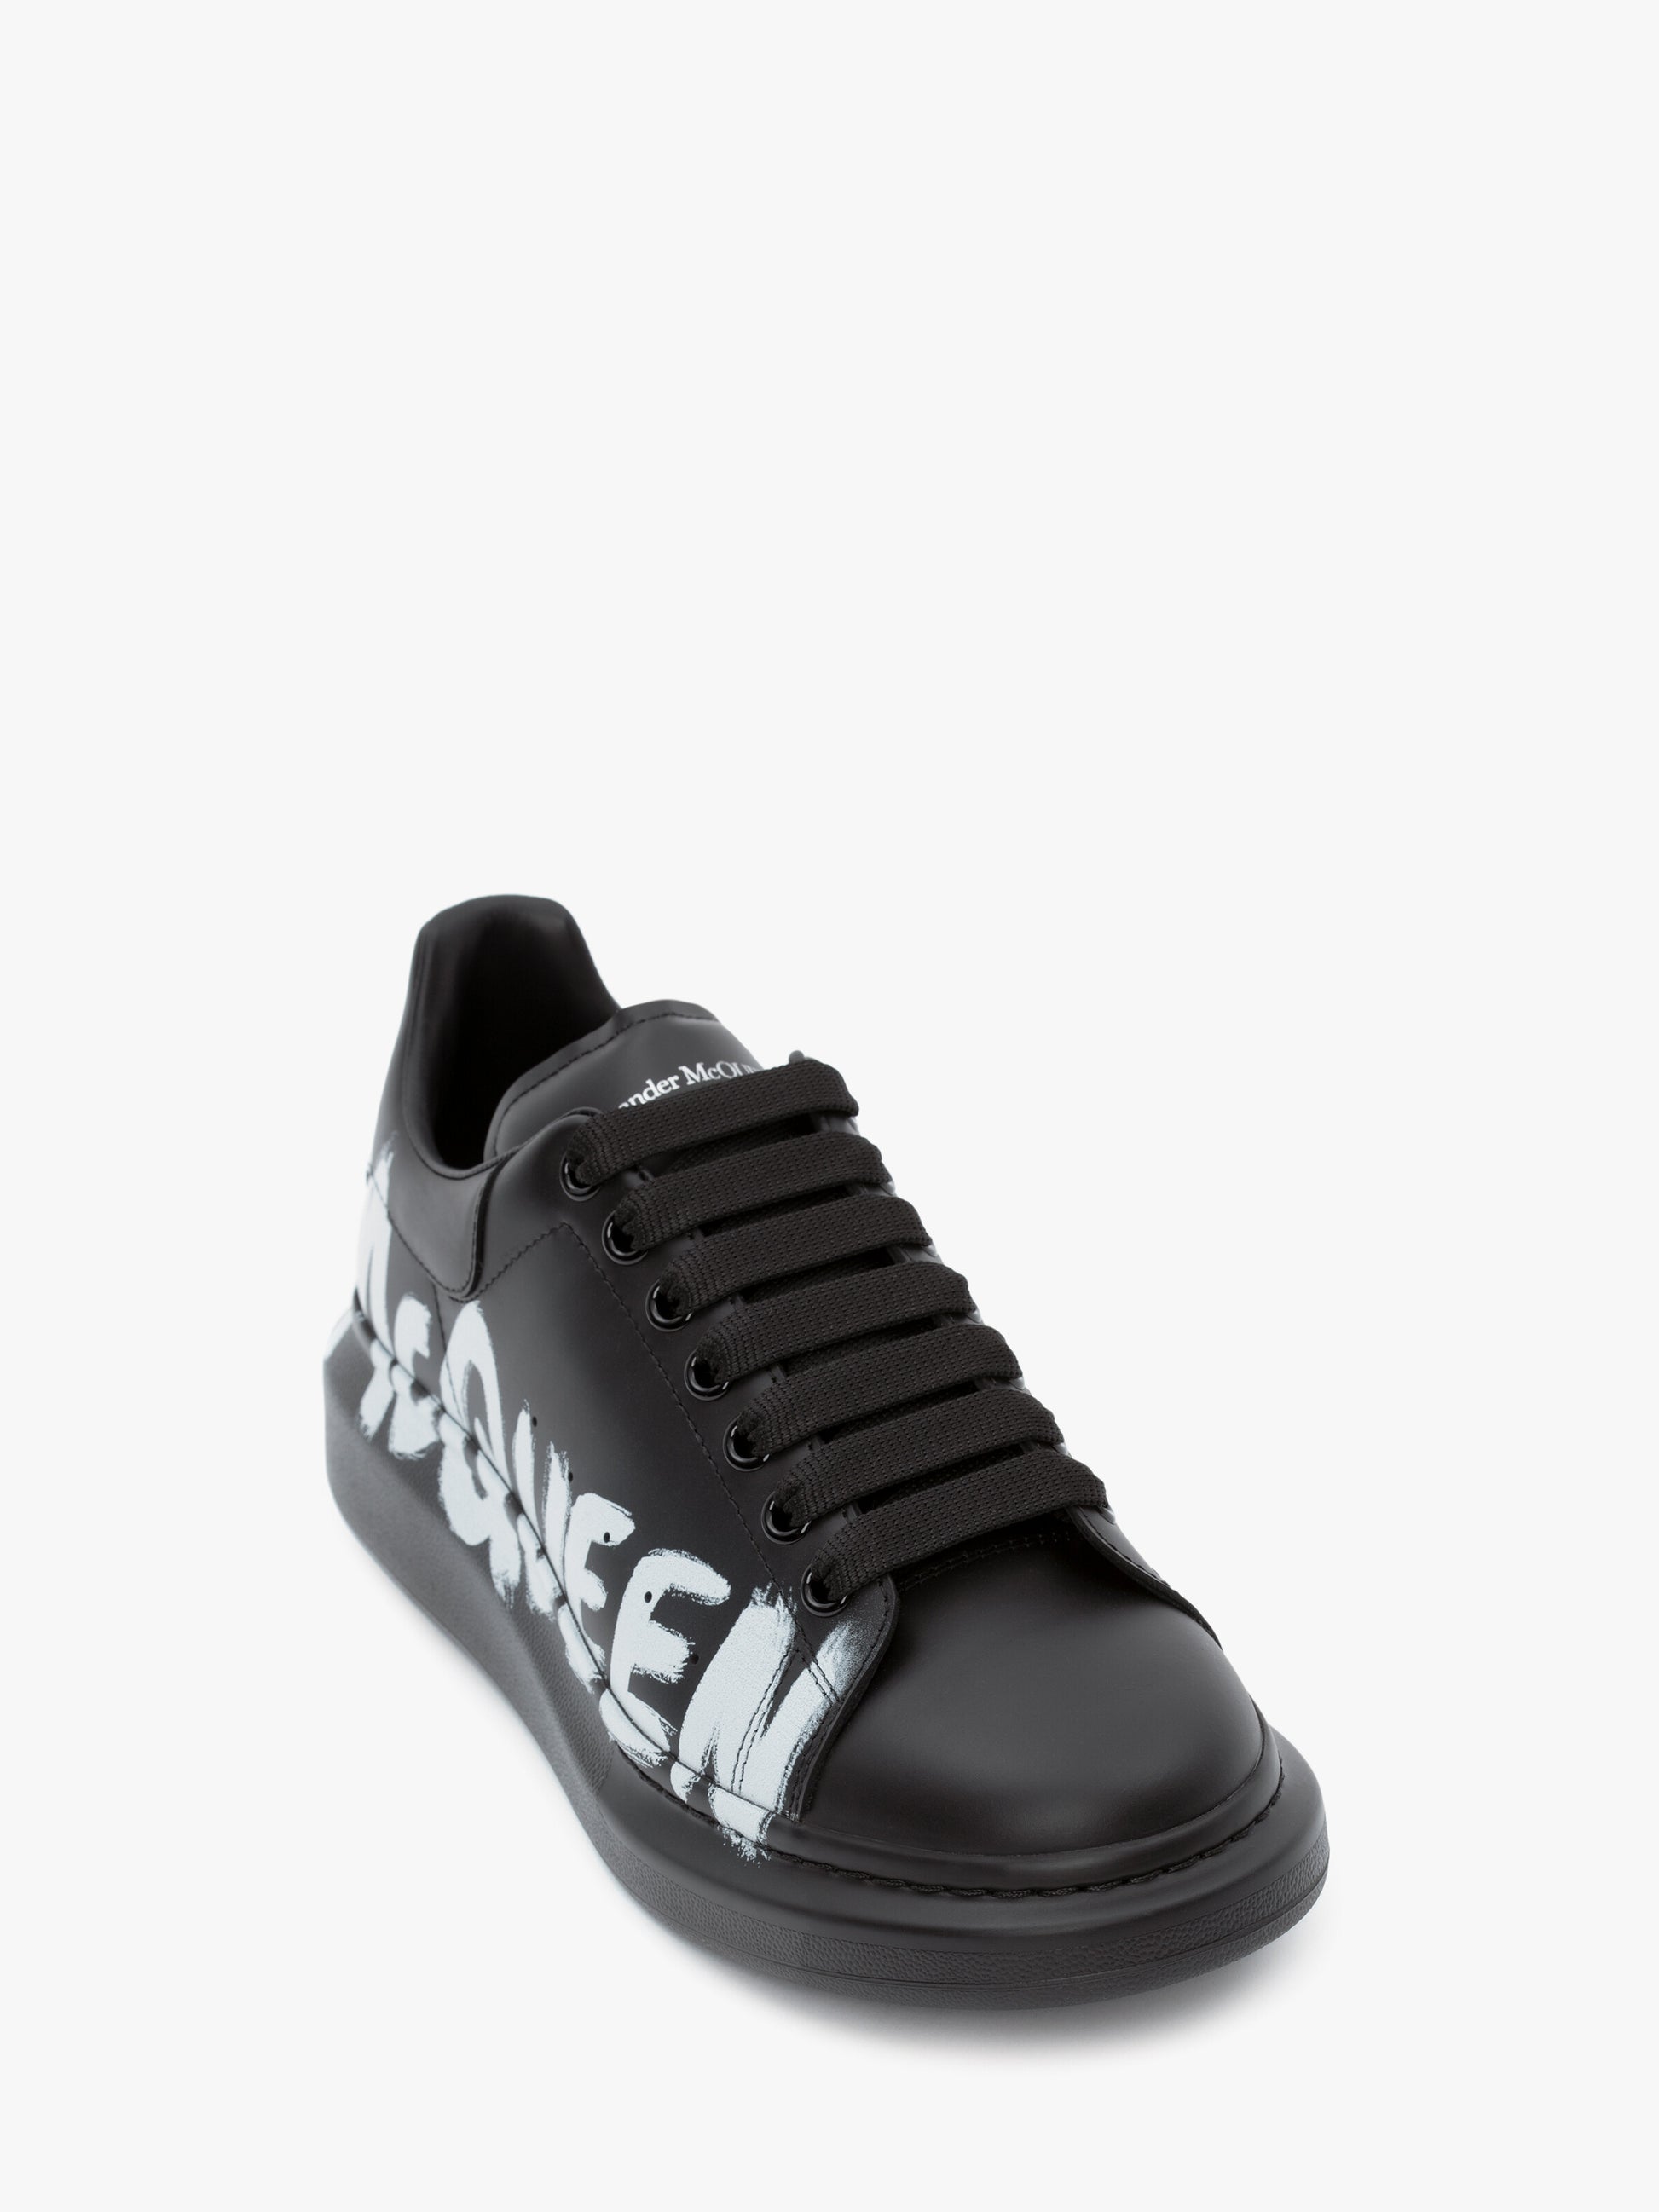 ALEXANDER McQUEEN - Sneaker Oversize McQueen Graffiti in Nero/bianco - IperShopNY